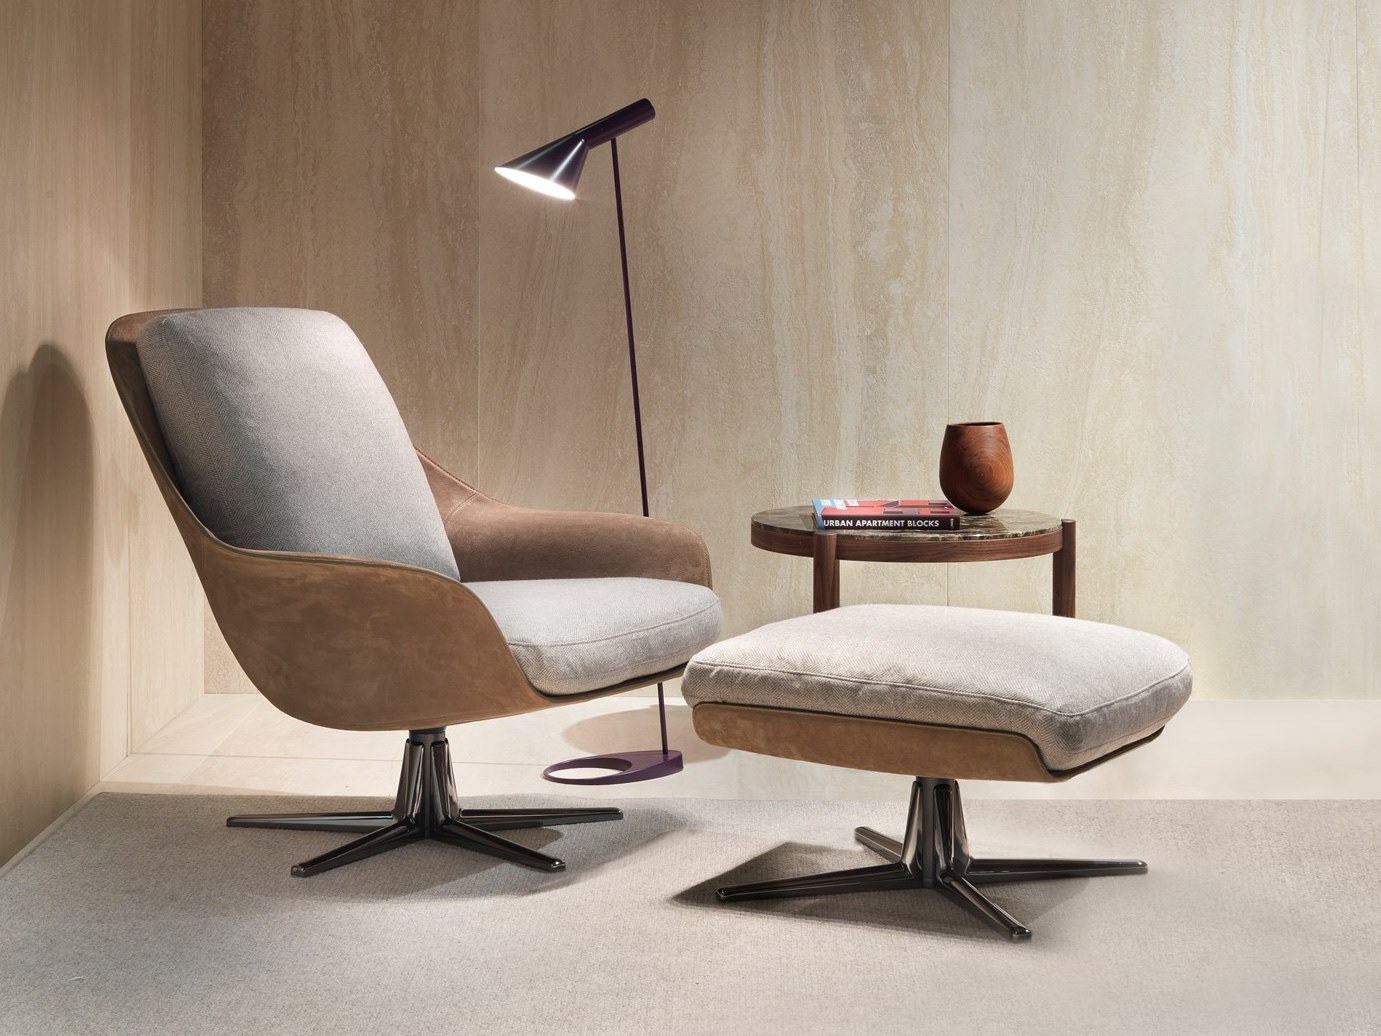 意大利Flexform 2018年新品 旋转休闲椅 Carlo Colombo SVEVA沙发椅 玻璃钢内架不锈钢脚架椅子